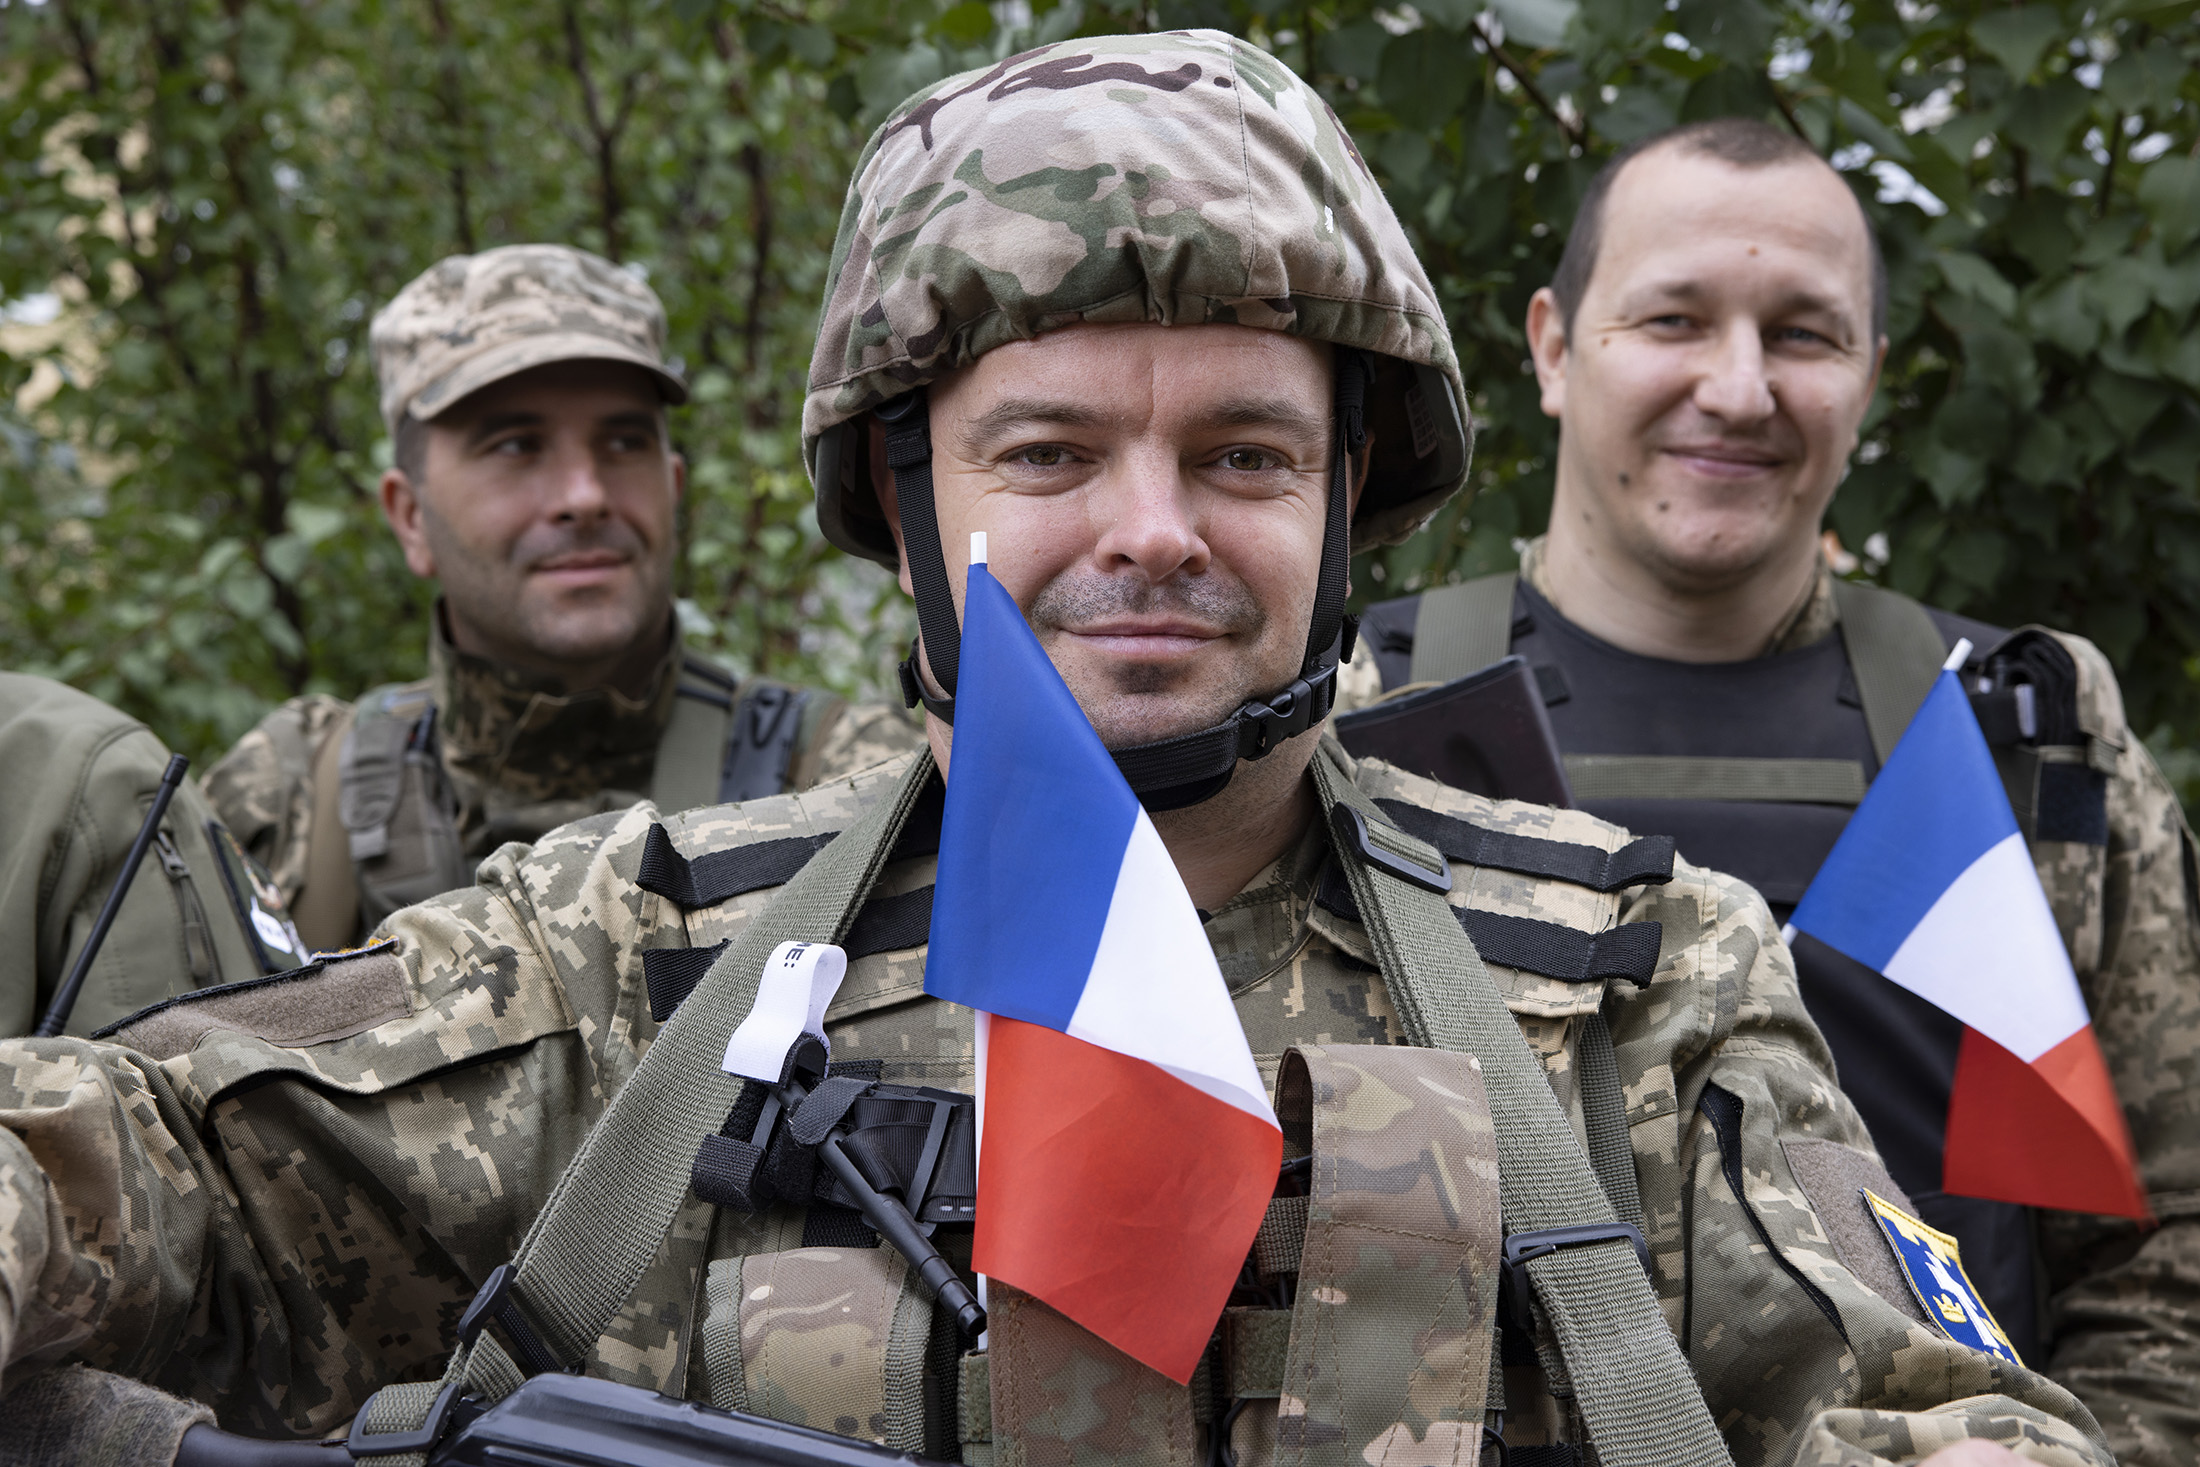 Des militaires ukrainiens du Bataillon Charles de Gaulle portent sur leurs uniformes des drapeaux français.